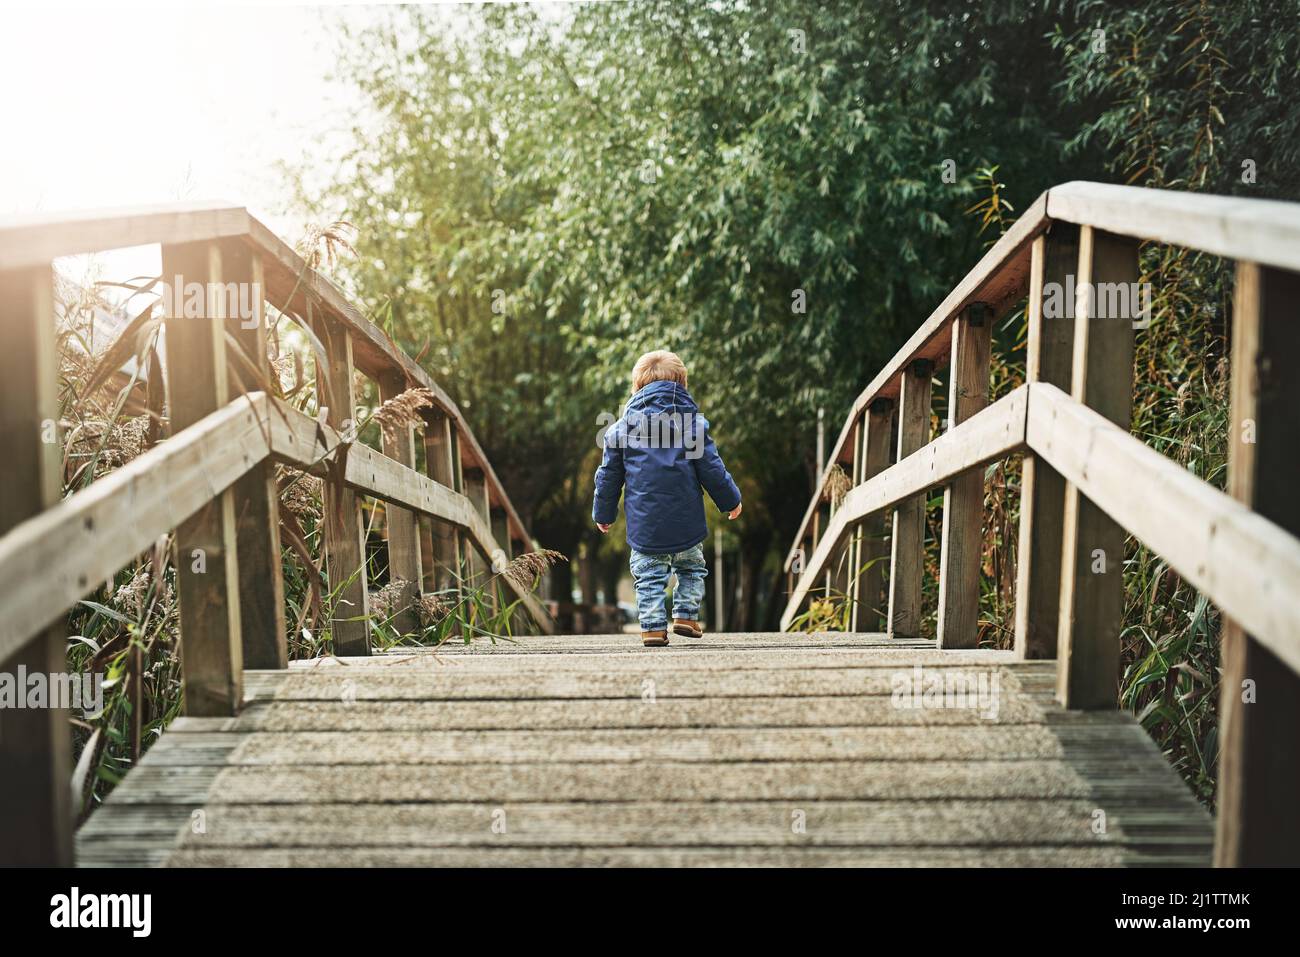 Pensando en el mundo. Foto de vista trasera de un niño pequeño cruzando un puente en un parque. Foto de stock